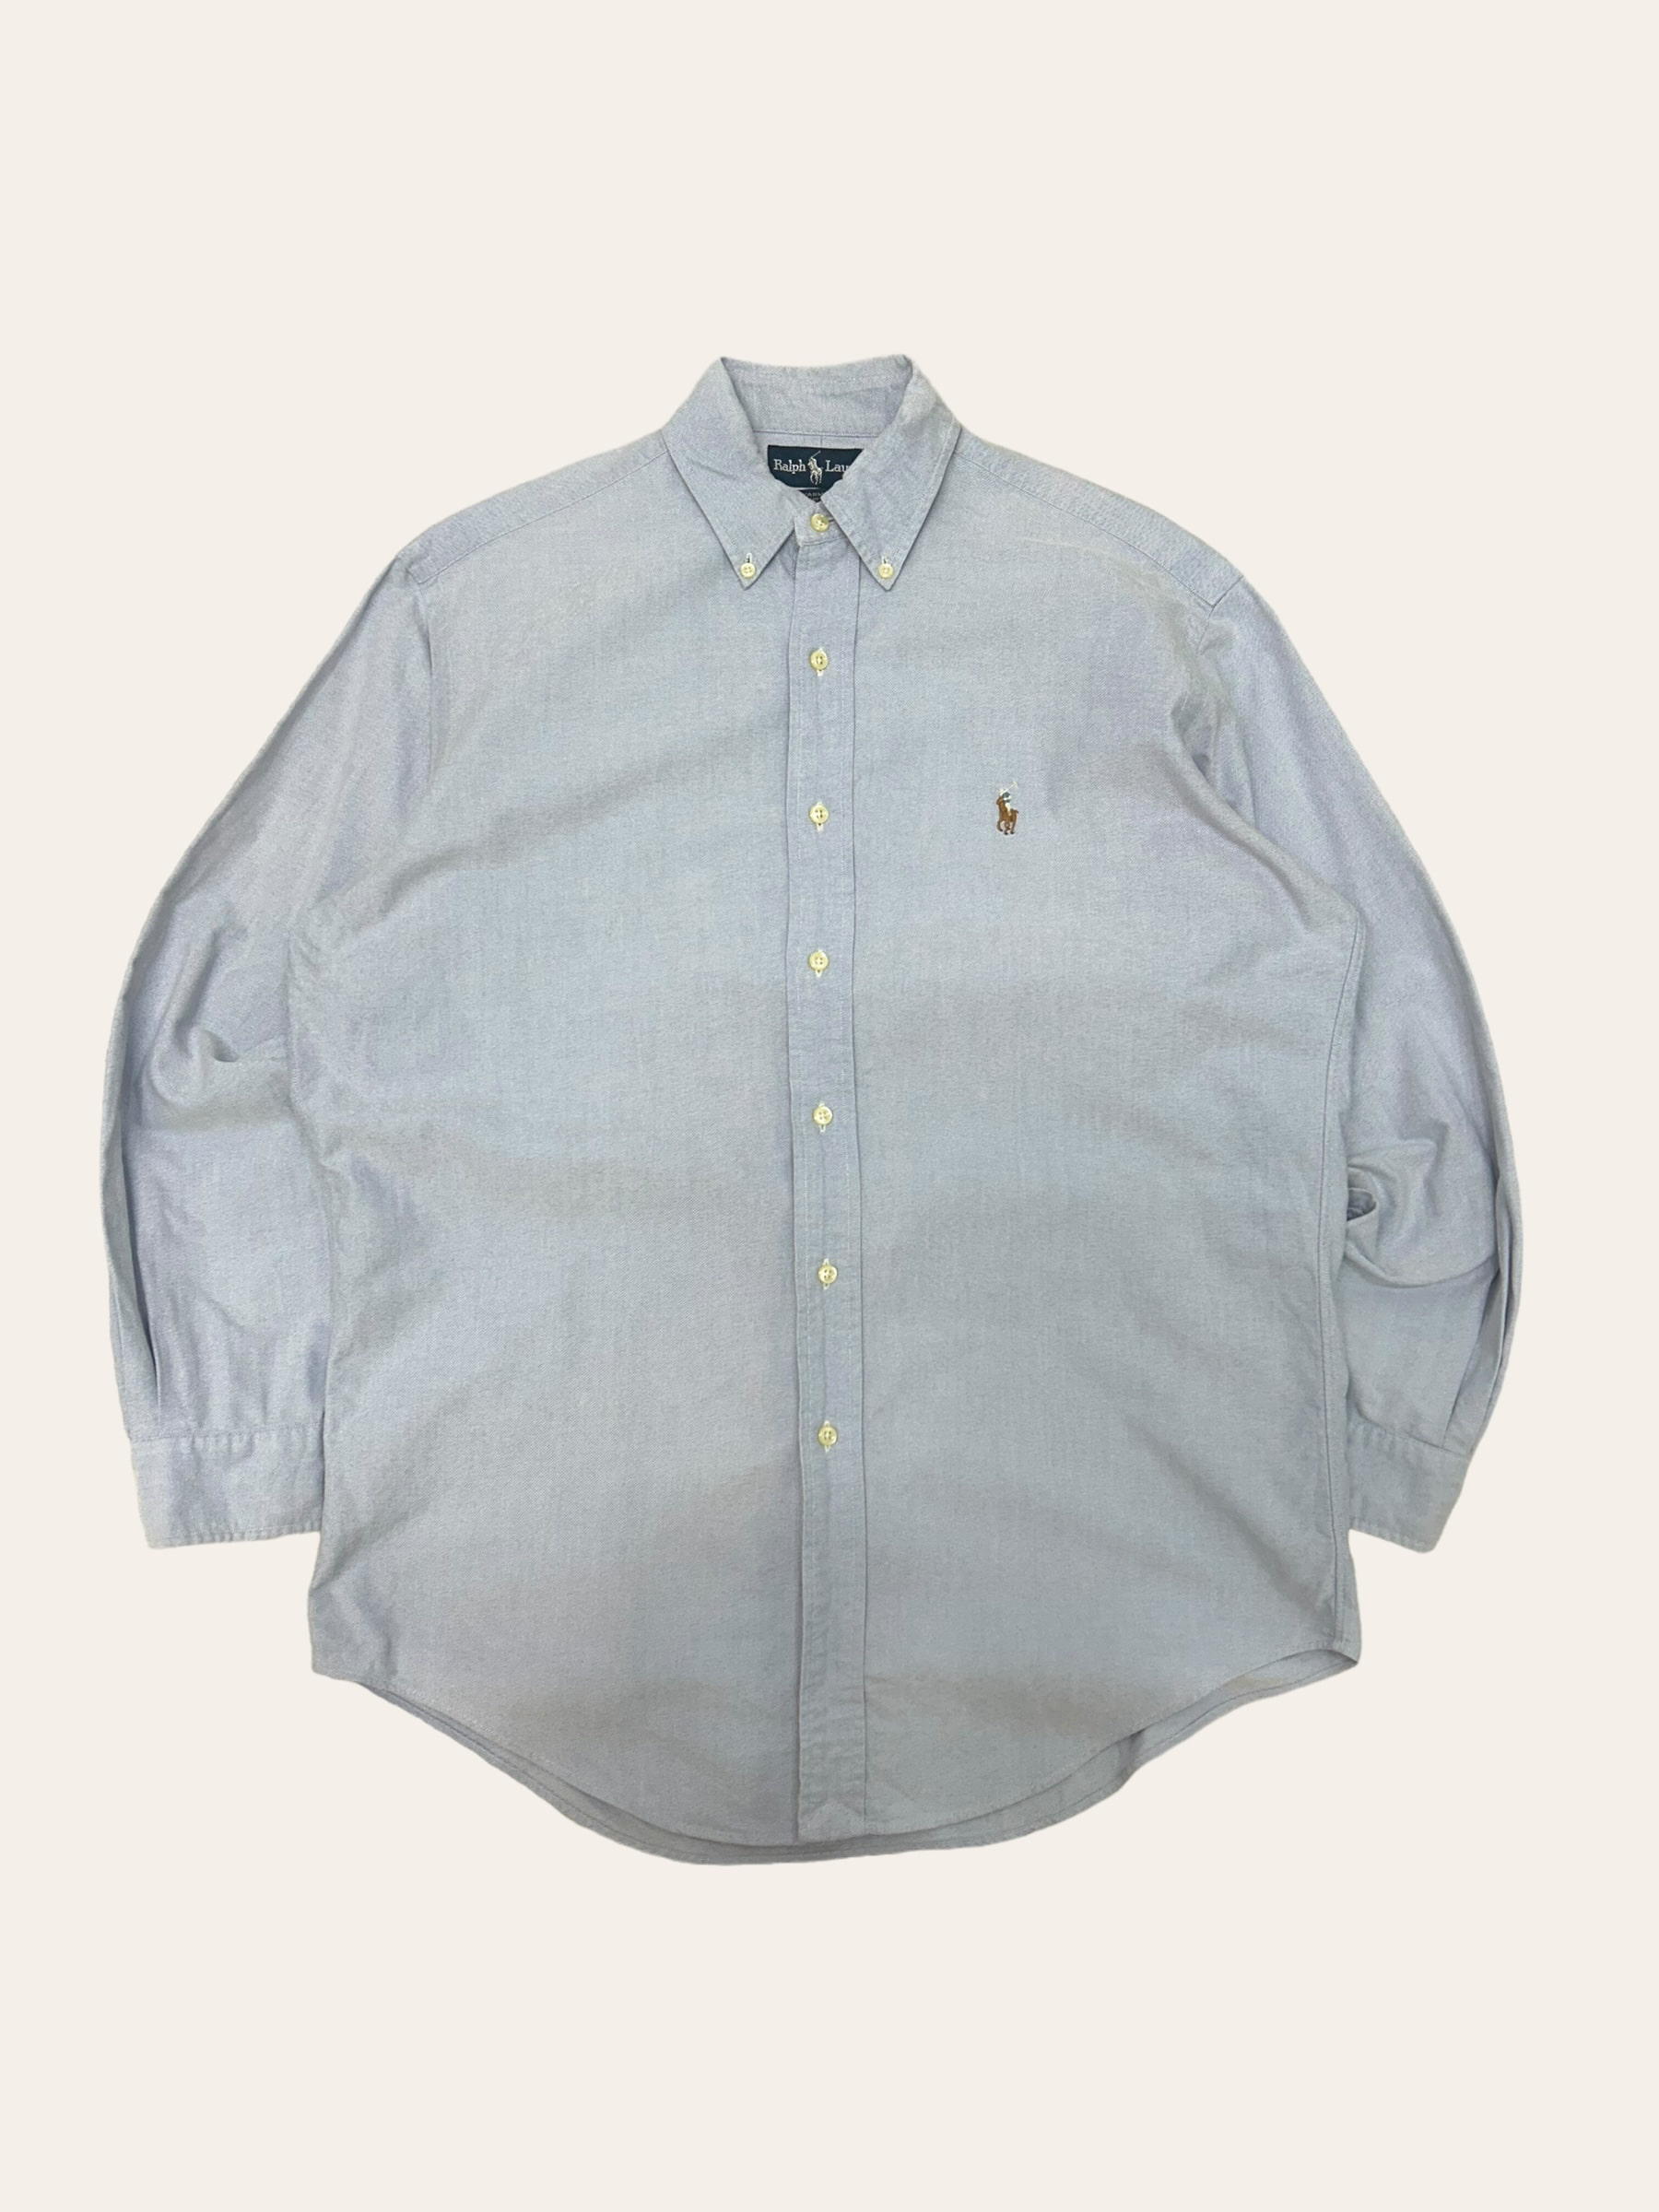 (From USA)Polo ralph lauren blue oxford shirt 15